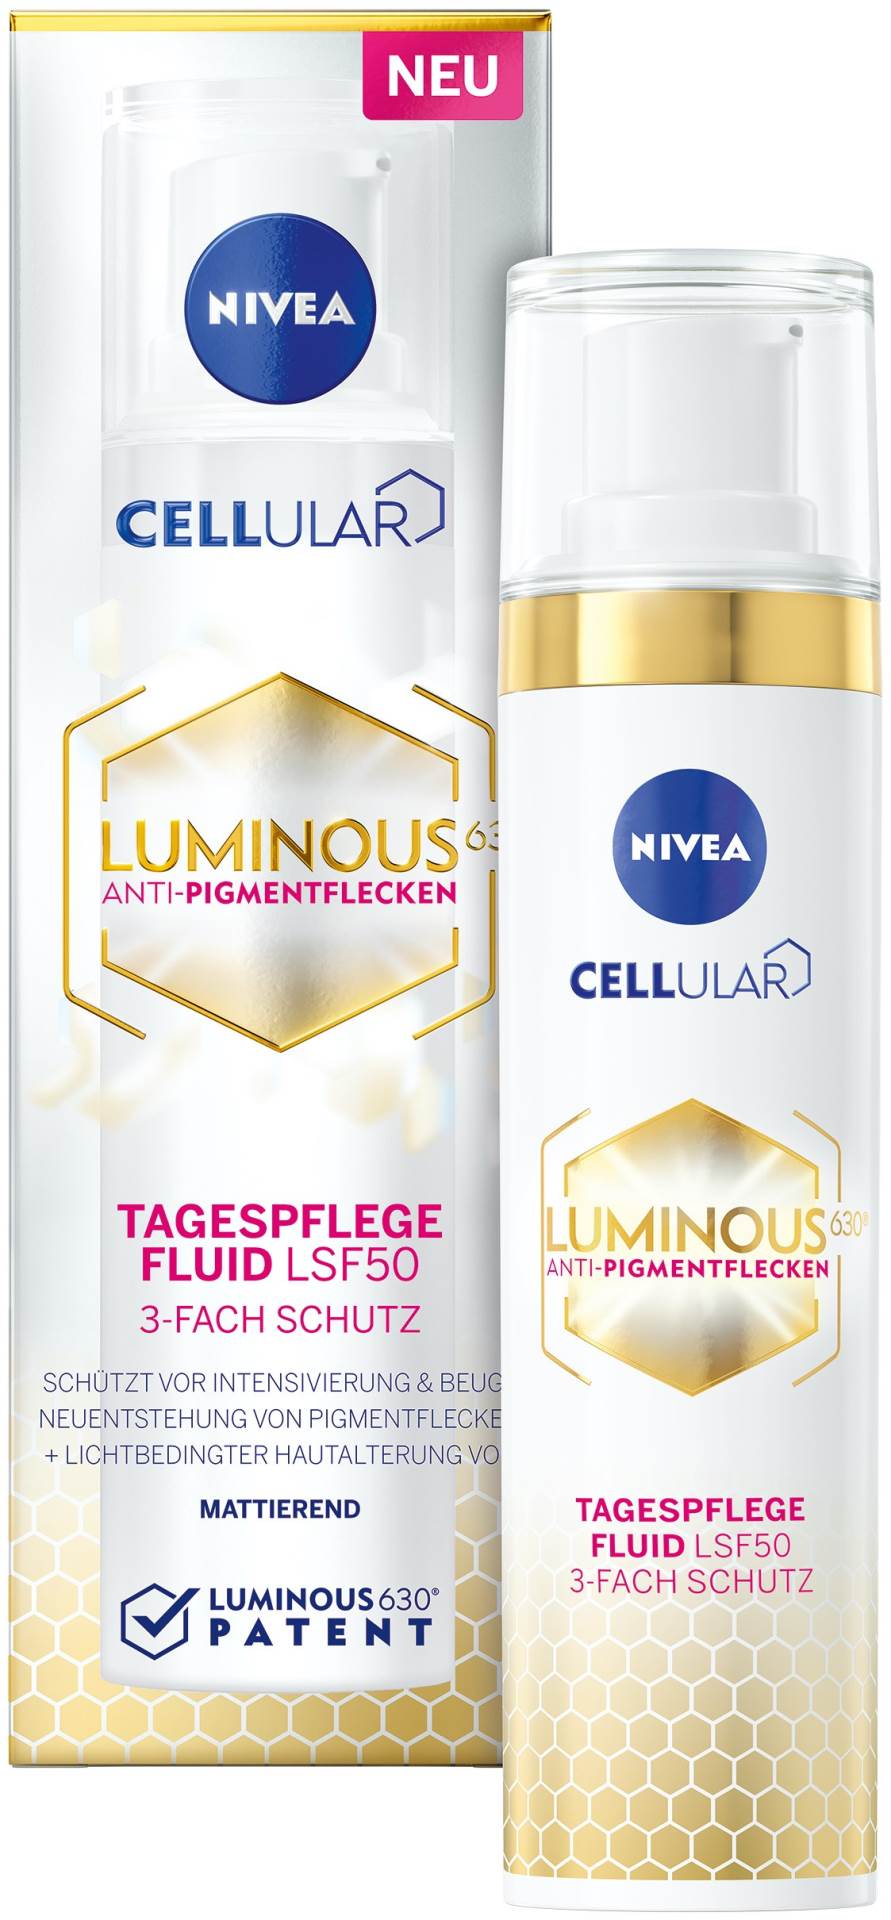 Uživajte u blistavoj koži uz NIVEA Cellular LUMINOS630® liniju proizvoda